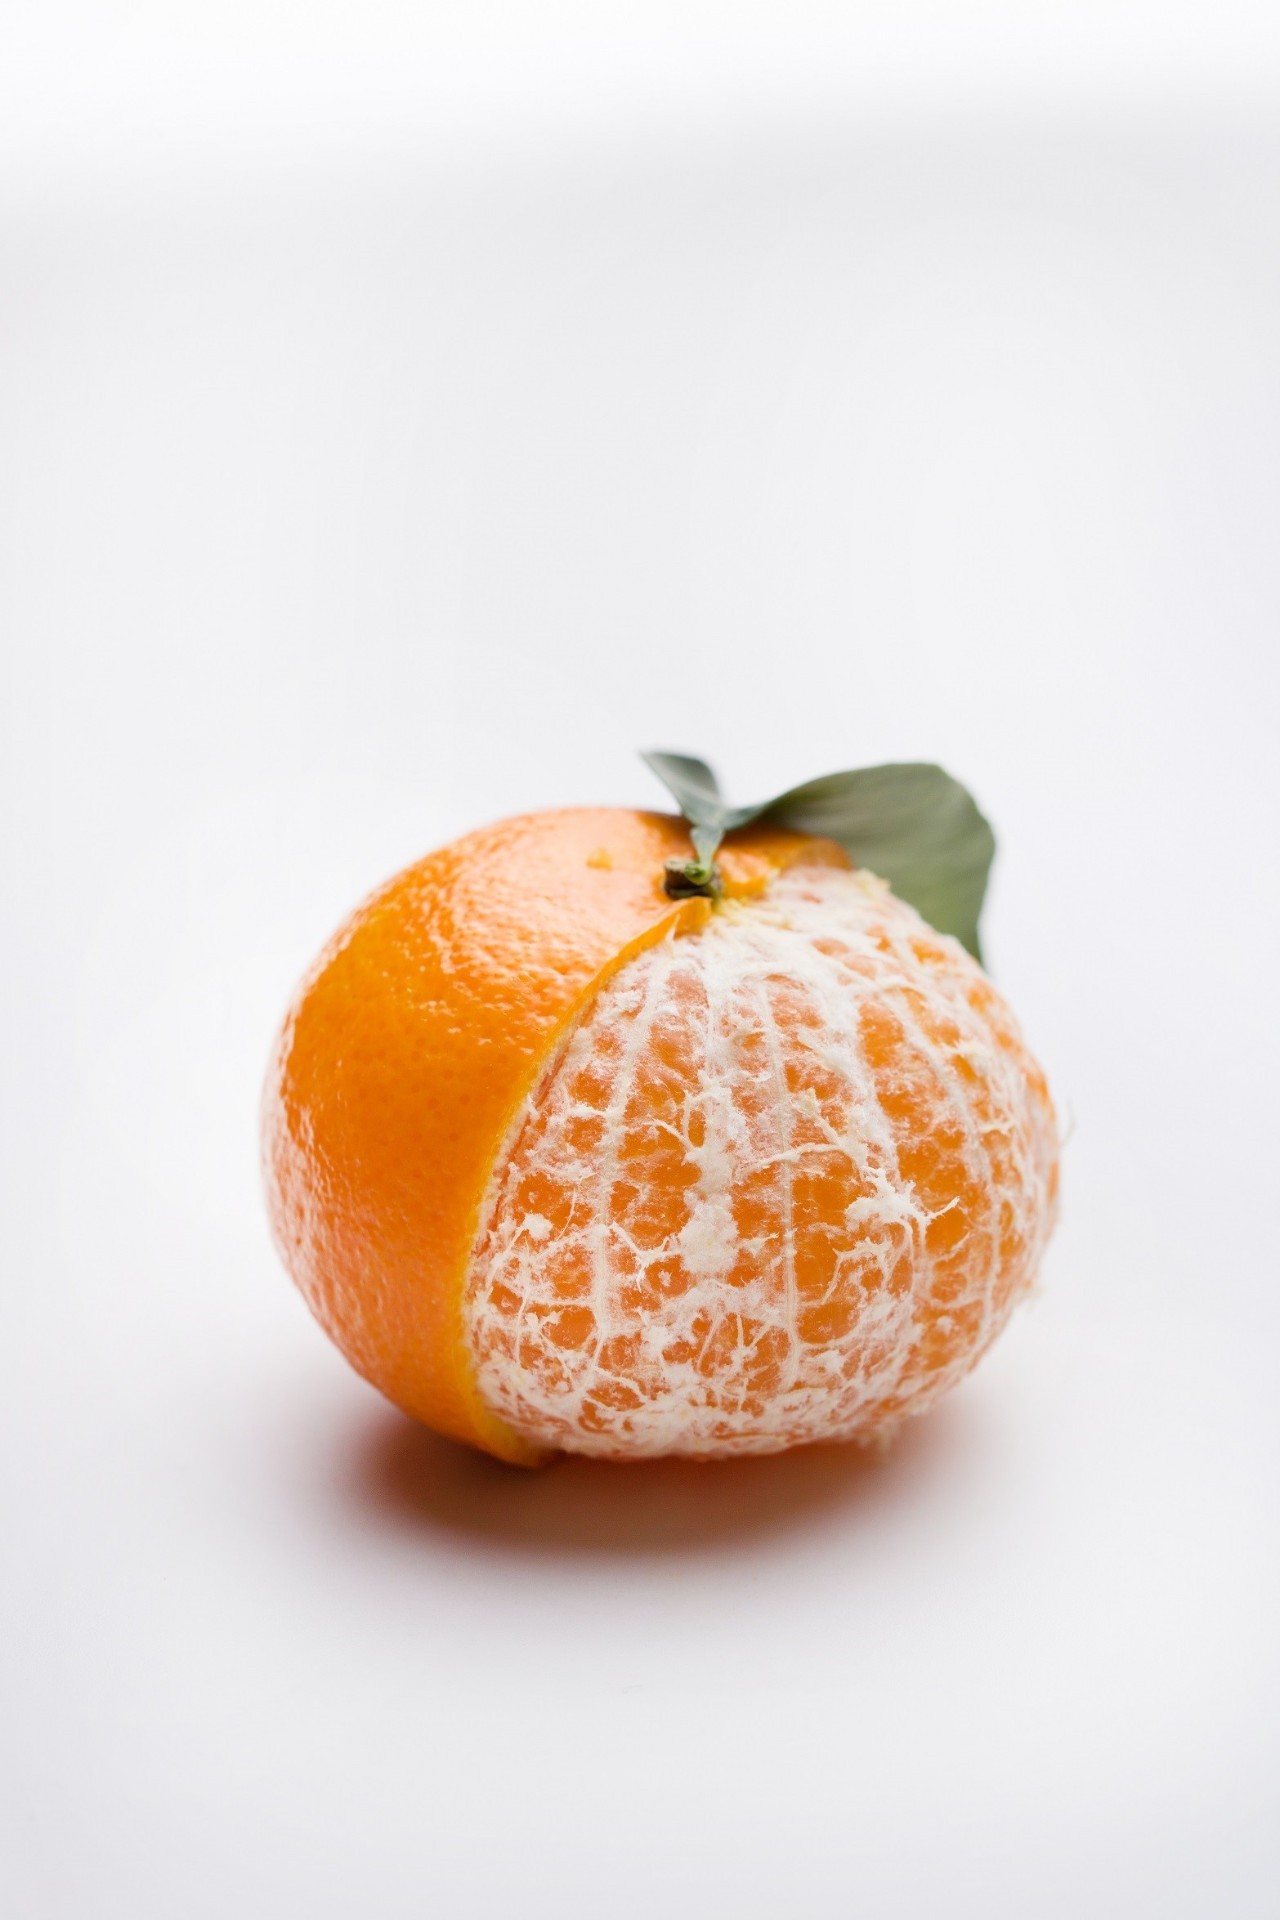 以色列柑橘国家品牌Jaffa 预计Orri橘子对华出口